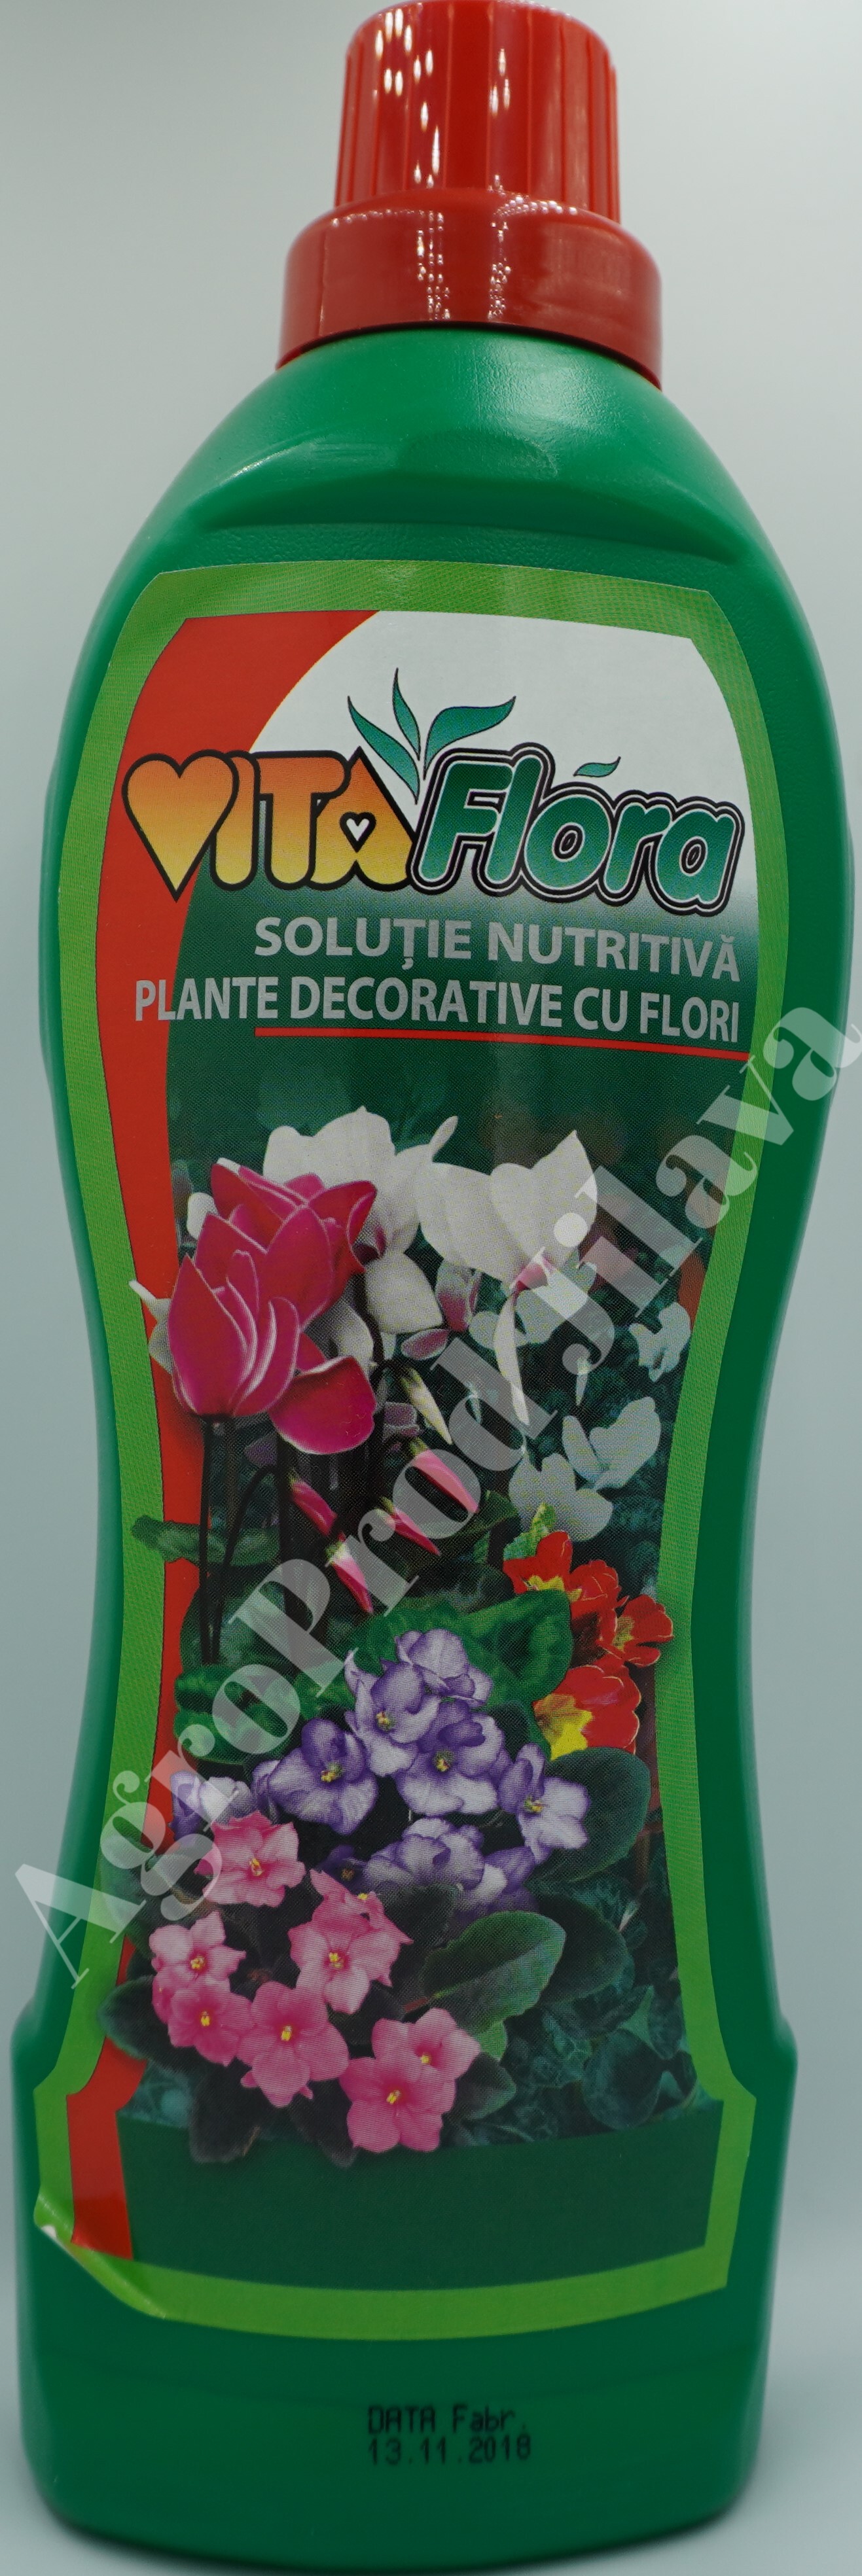 Vitaflora pentru plante cu flori 1L